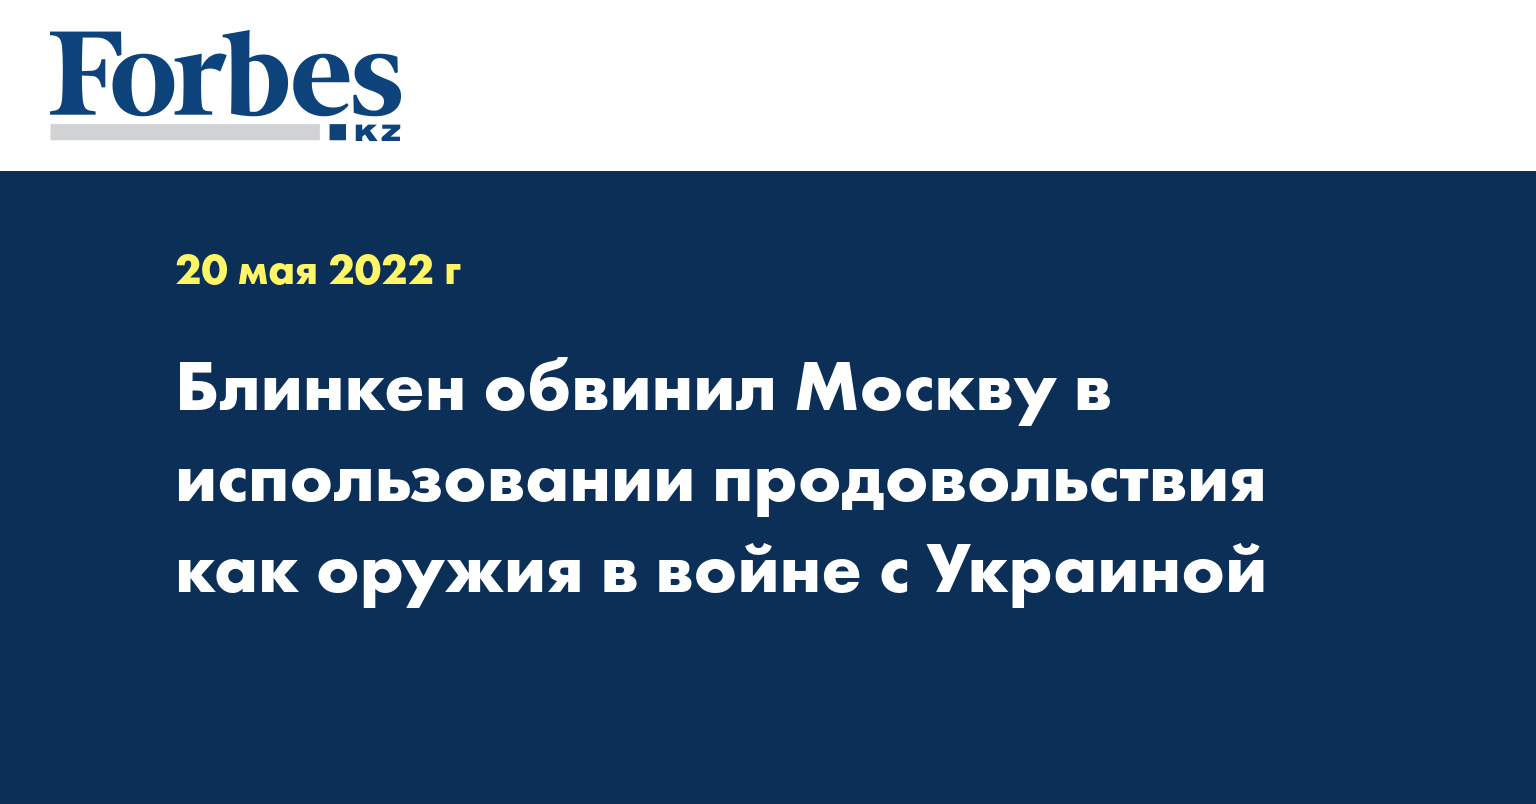 Блинкен обвинил Москву в использовании продовольствия как оружия в войне с Украиной